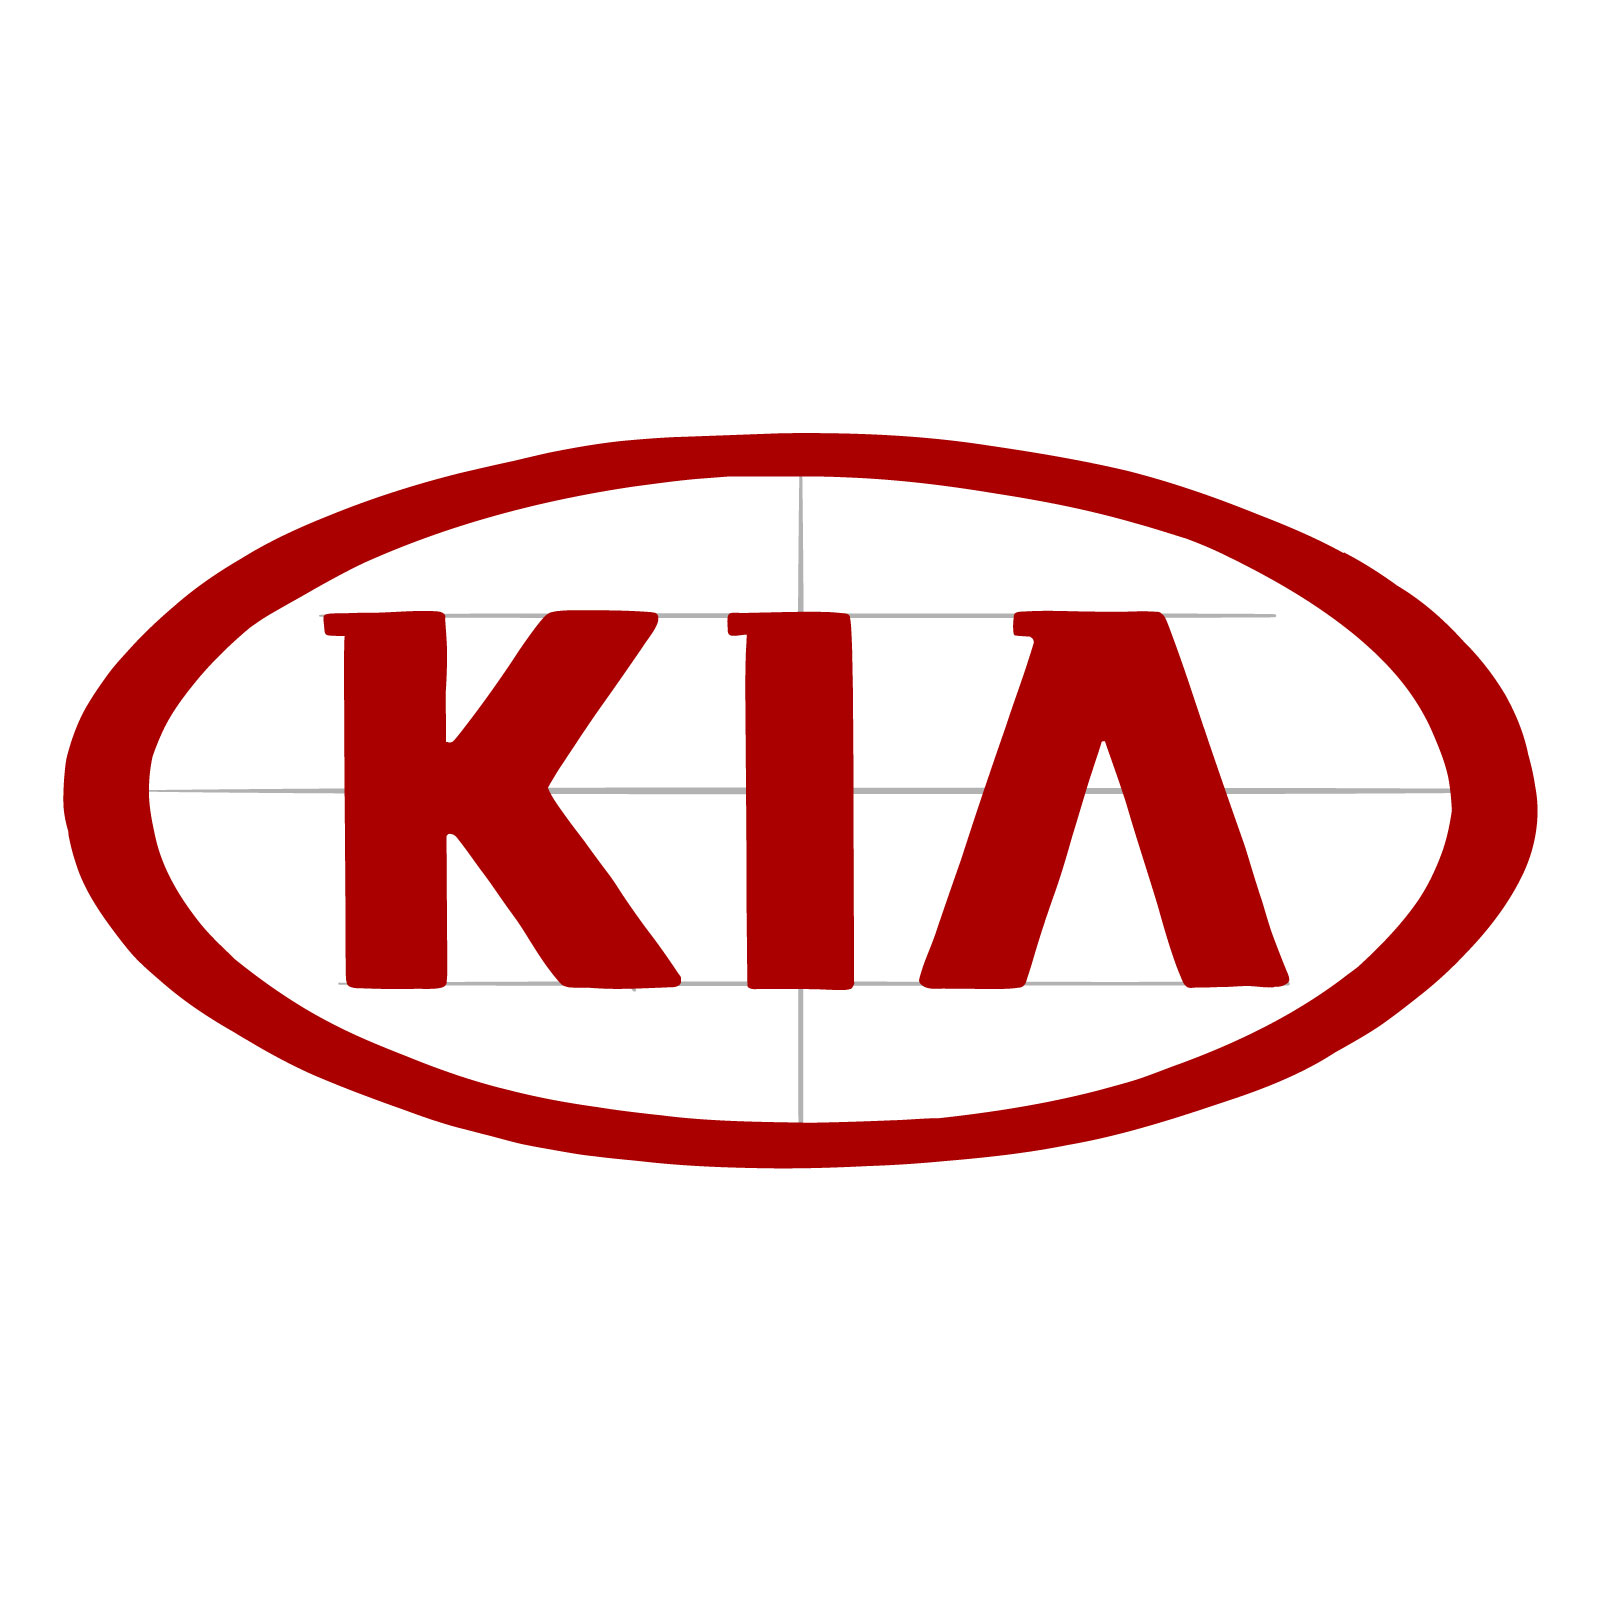 How to draw the KIA logo - step 09